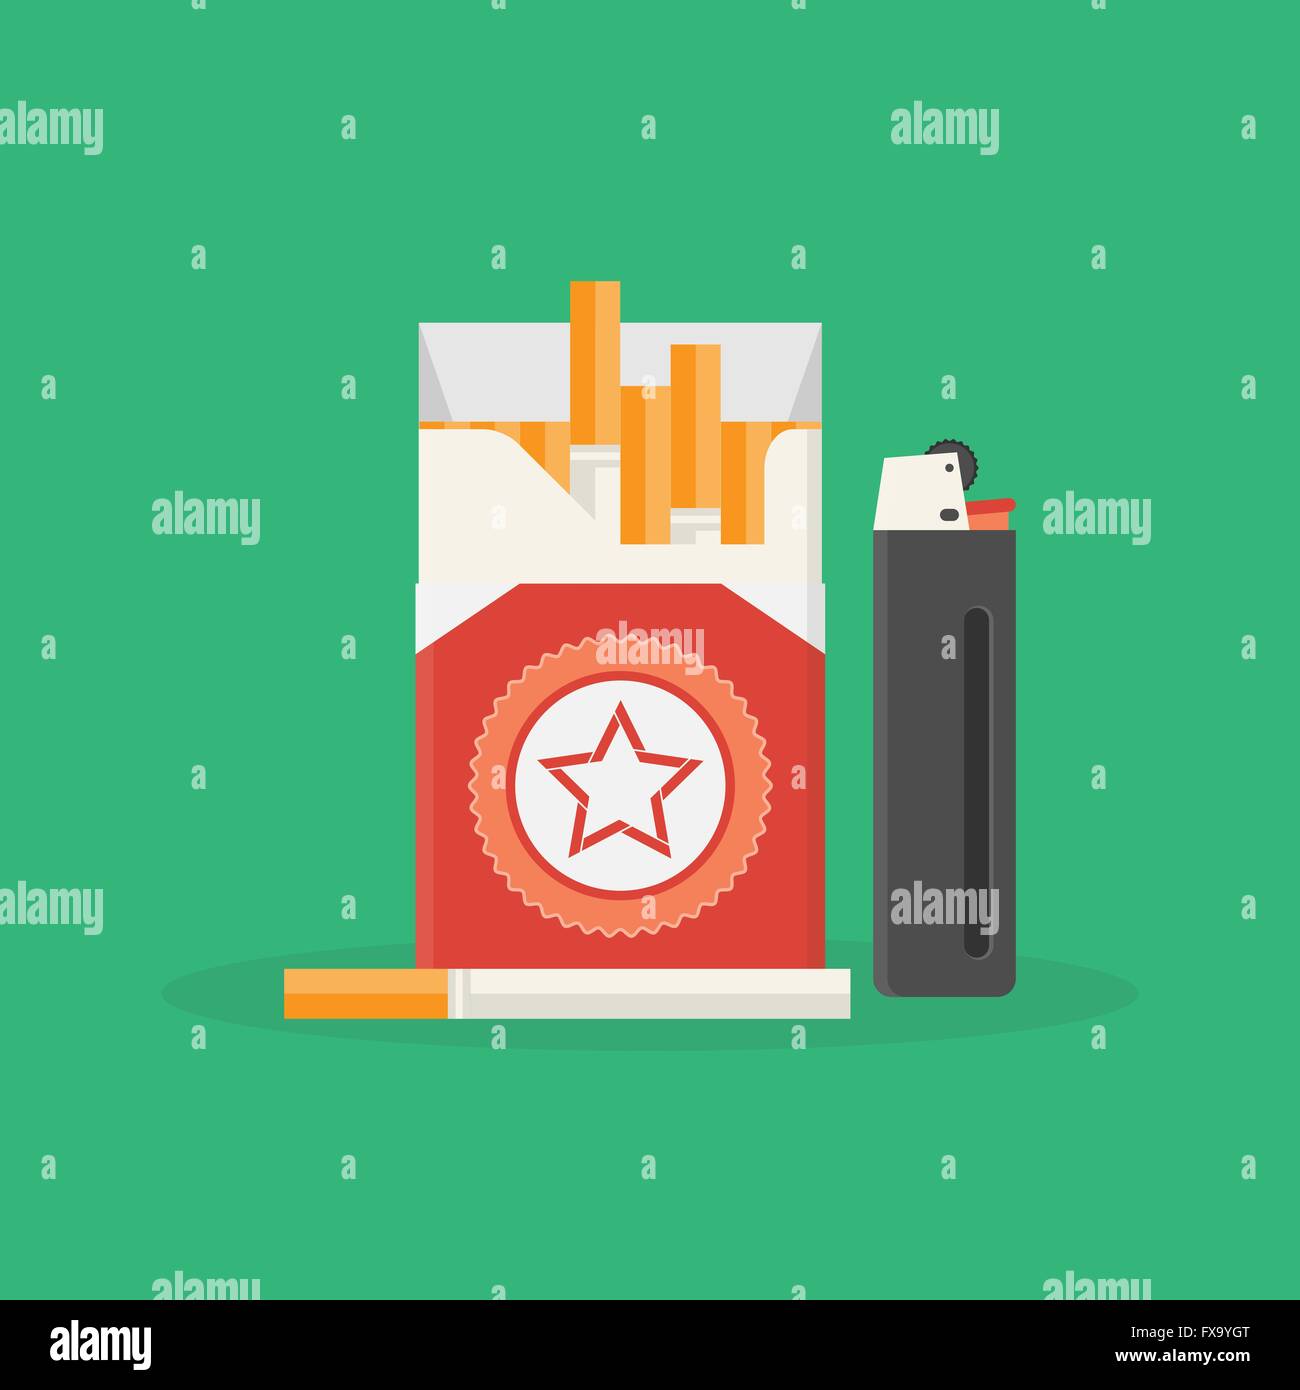 Vector illustration of a ouvert paquet de cigarettes et plus léger. Problème de fumée. La dépendance à la nicotine. Concept de vie malsains Illustration de Vecteur